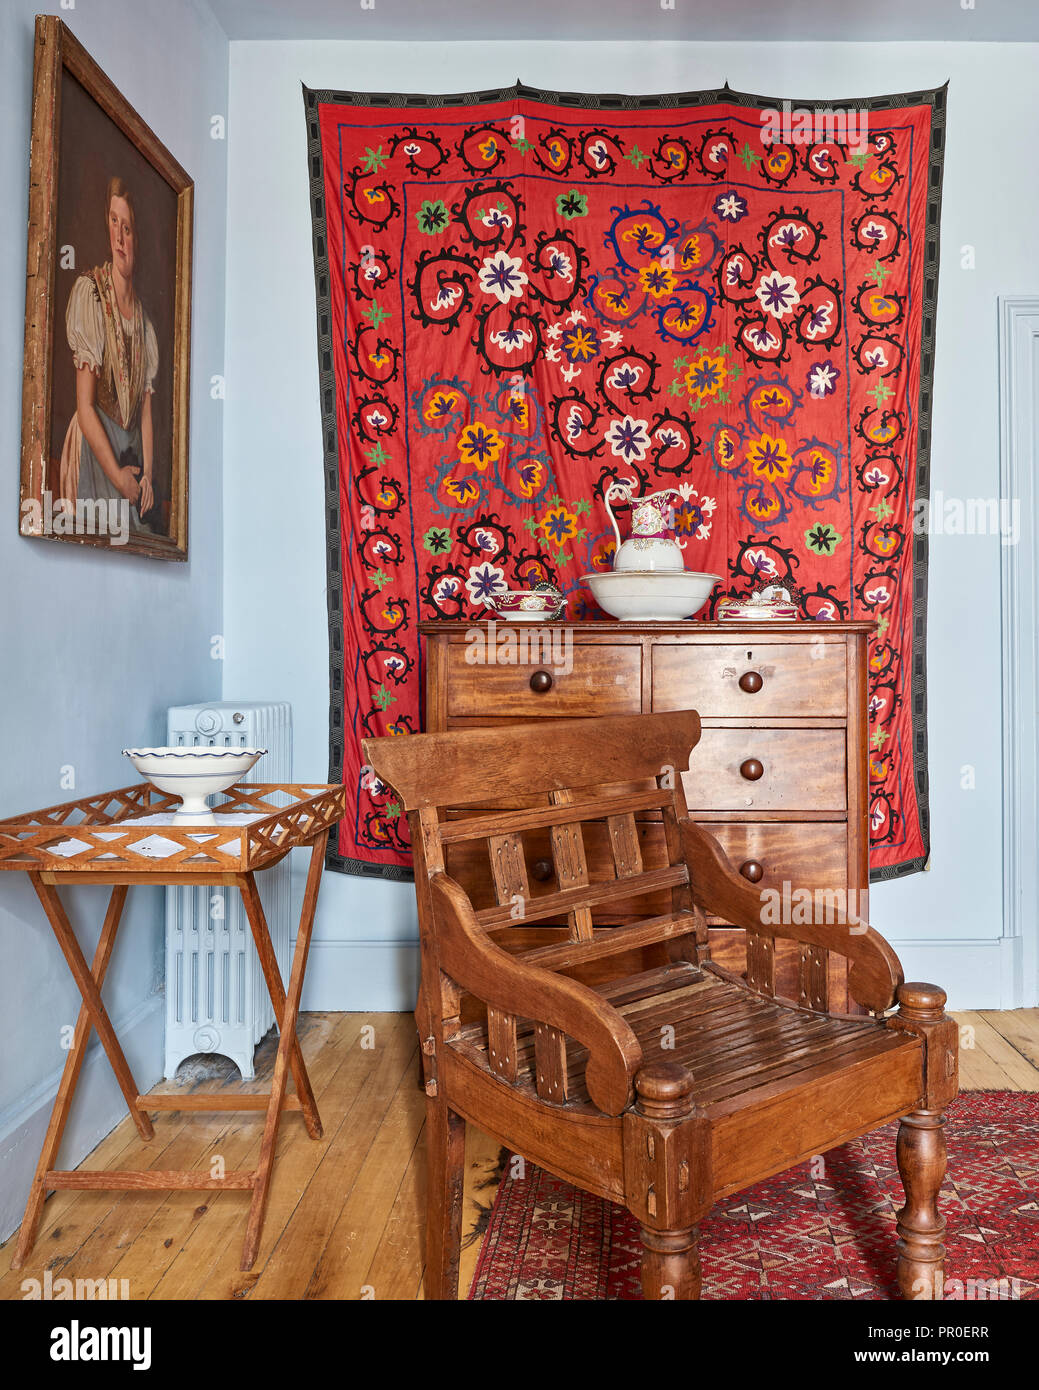 Textiles murales colorées et un mobilier en bois dans des tons de bleu clair prix Banque D'Images